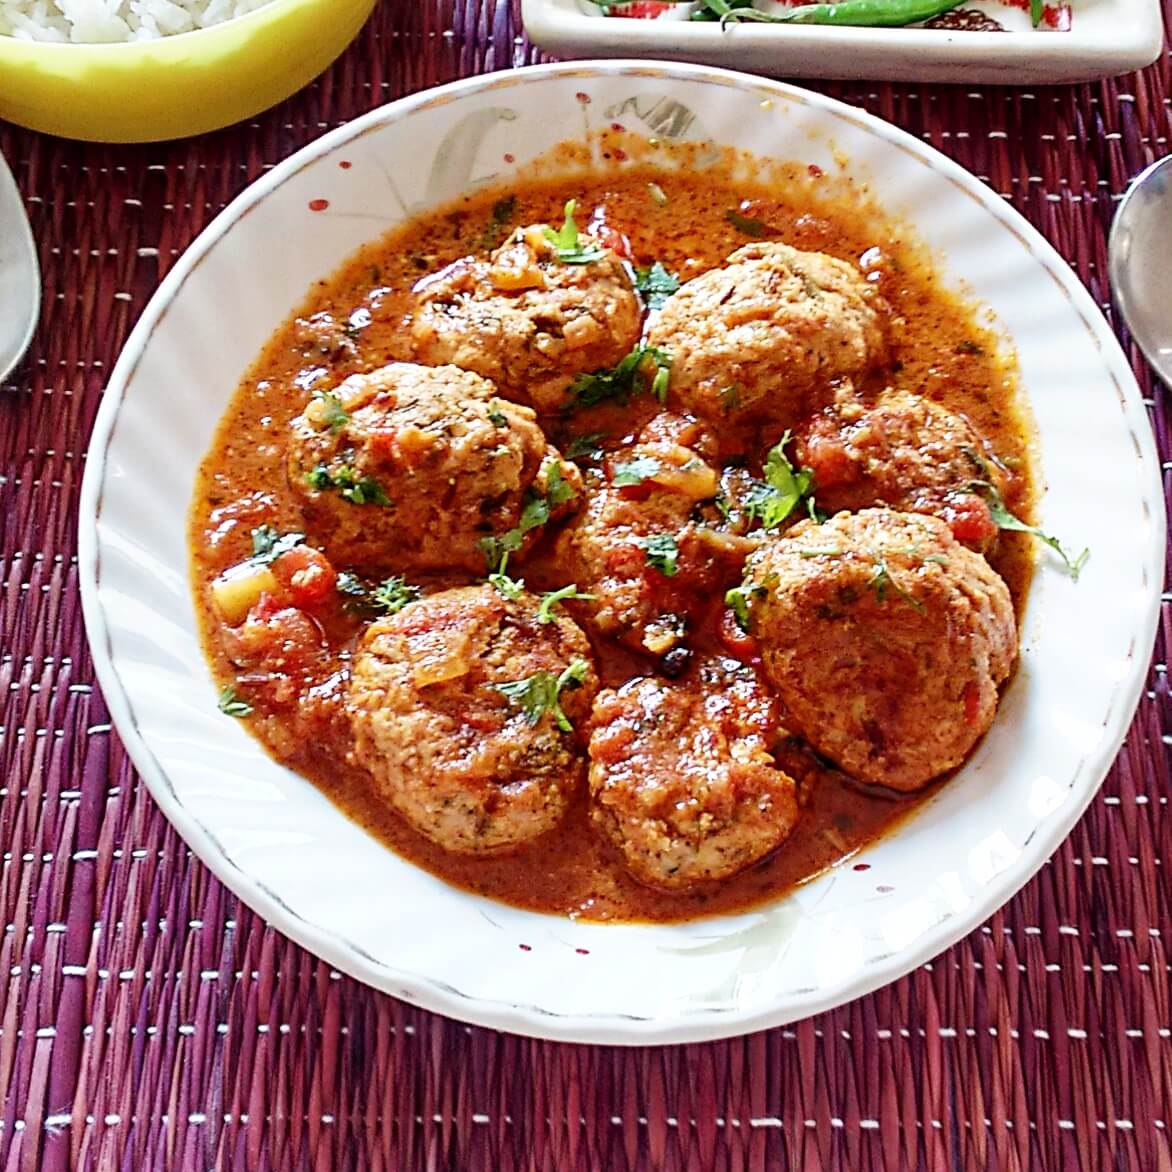 chicken kofta curry - chicken meatballs in spicy tomato sauce